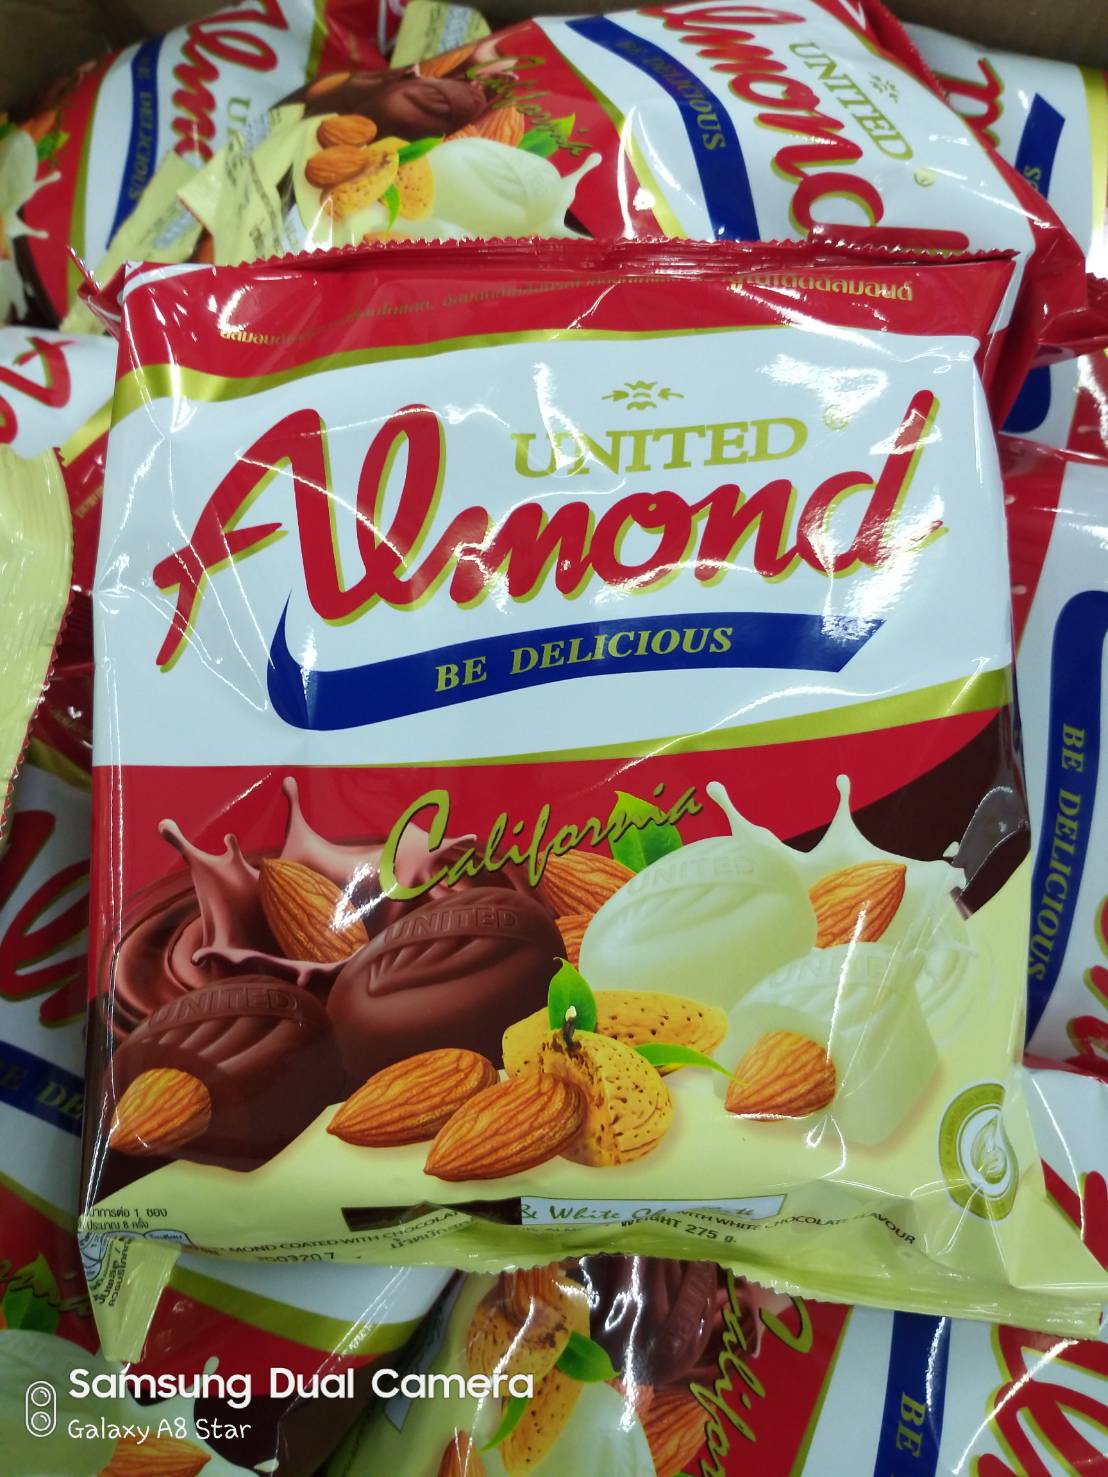 United almond ยูไนเต็ดอัลมอนด์เคลือบช็อคโกแลต (ไวท์ช็อกโกแลต แอนด์ ดาร์คช็อกโกแลต)